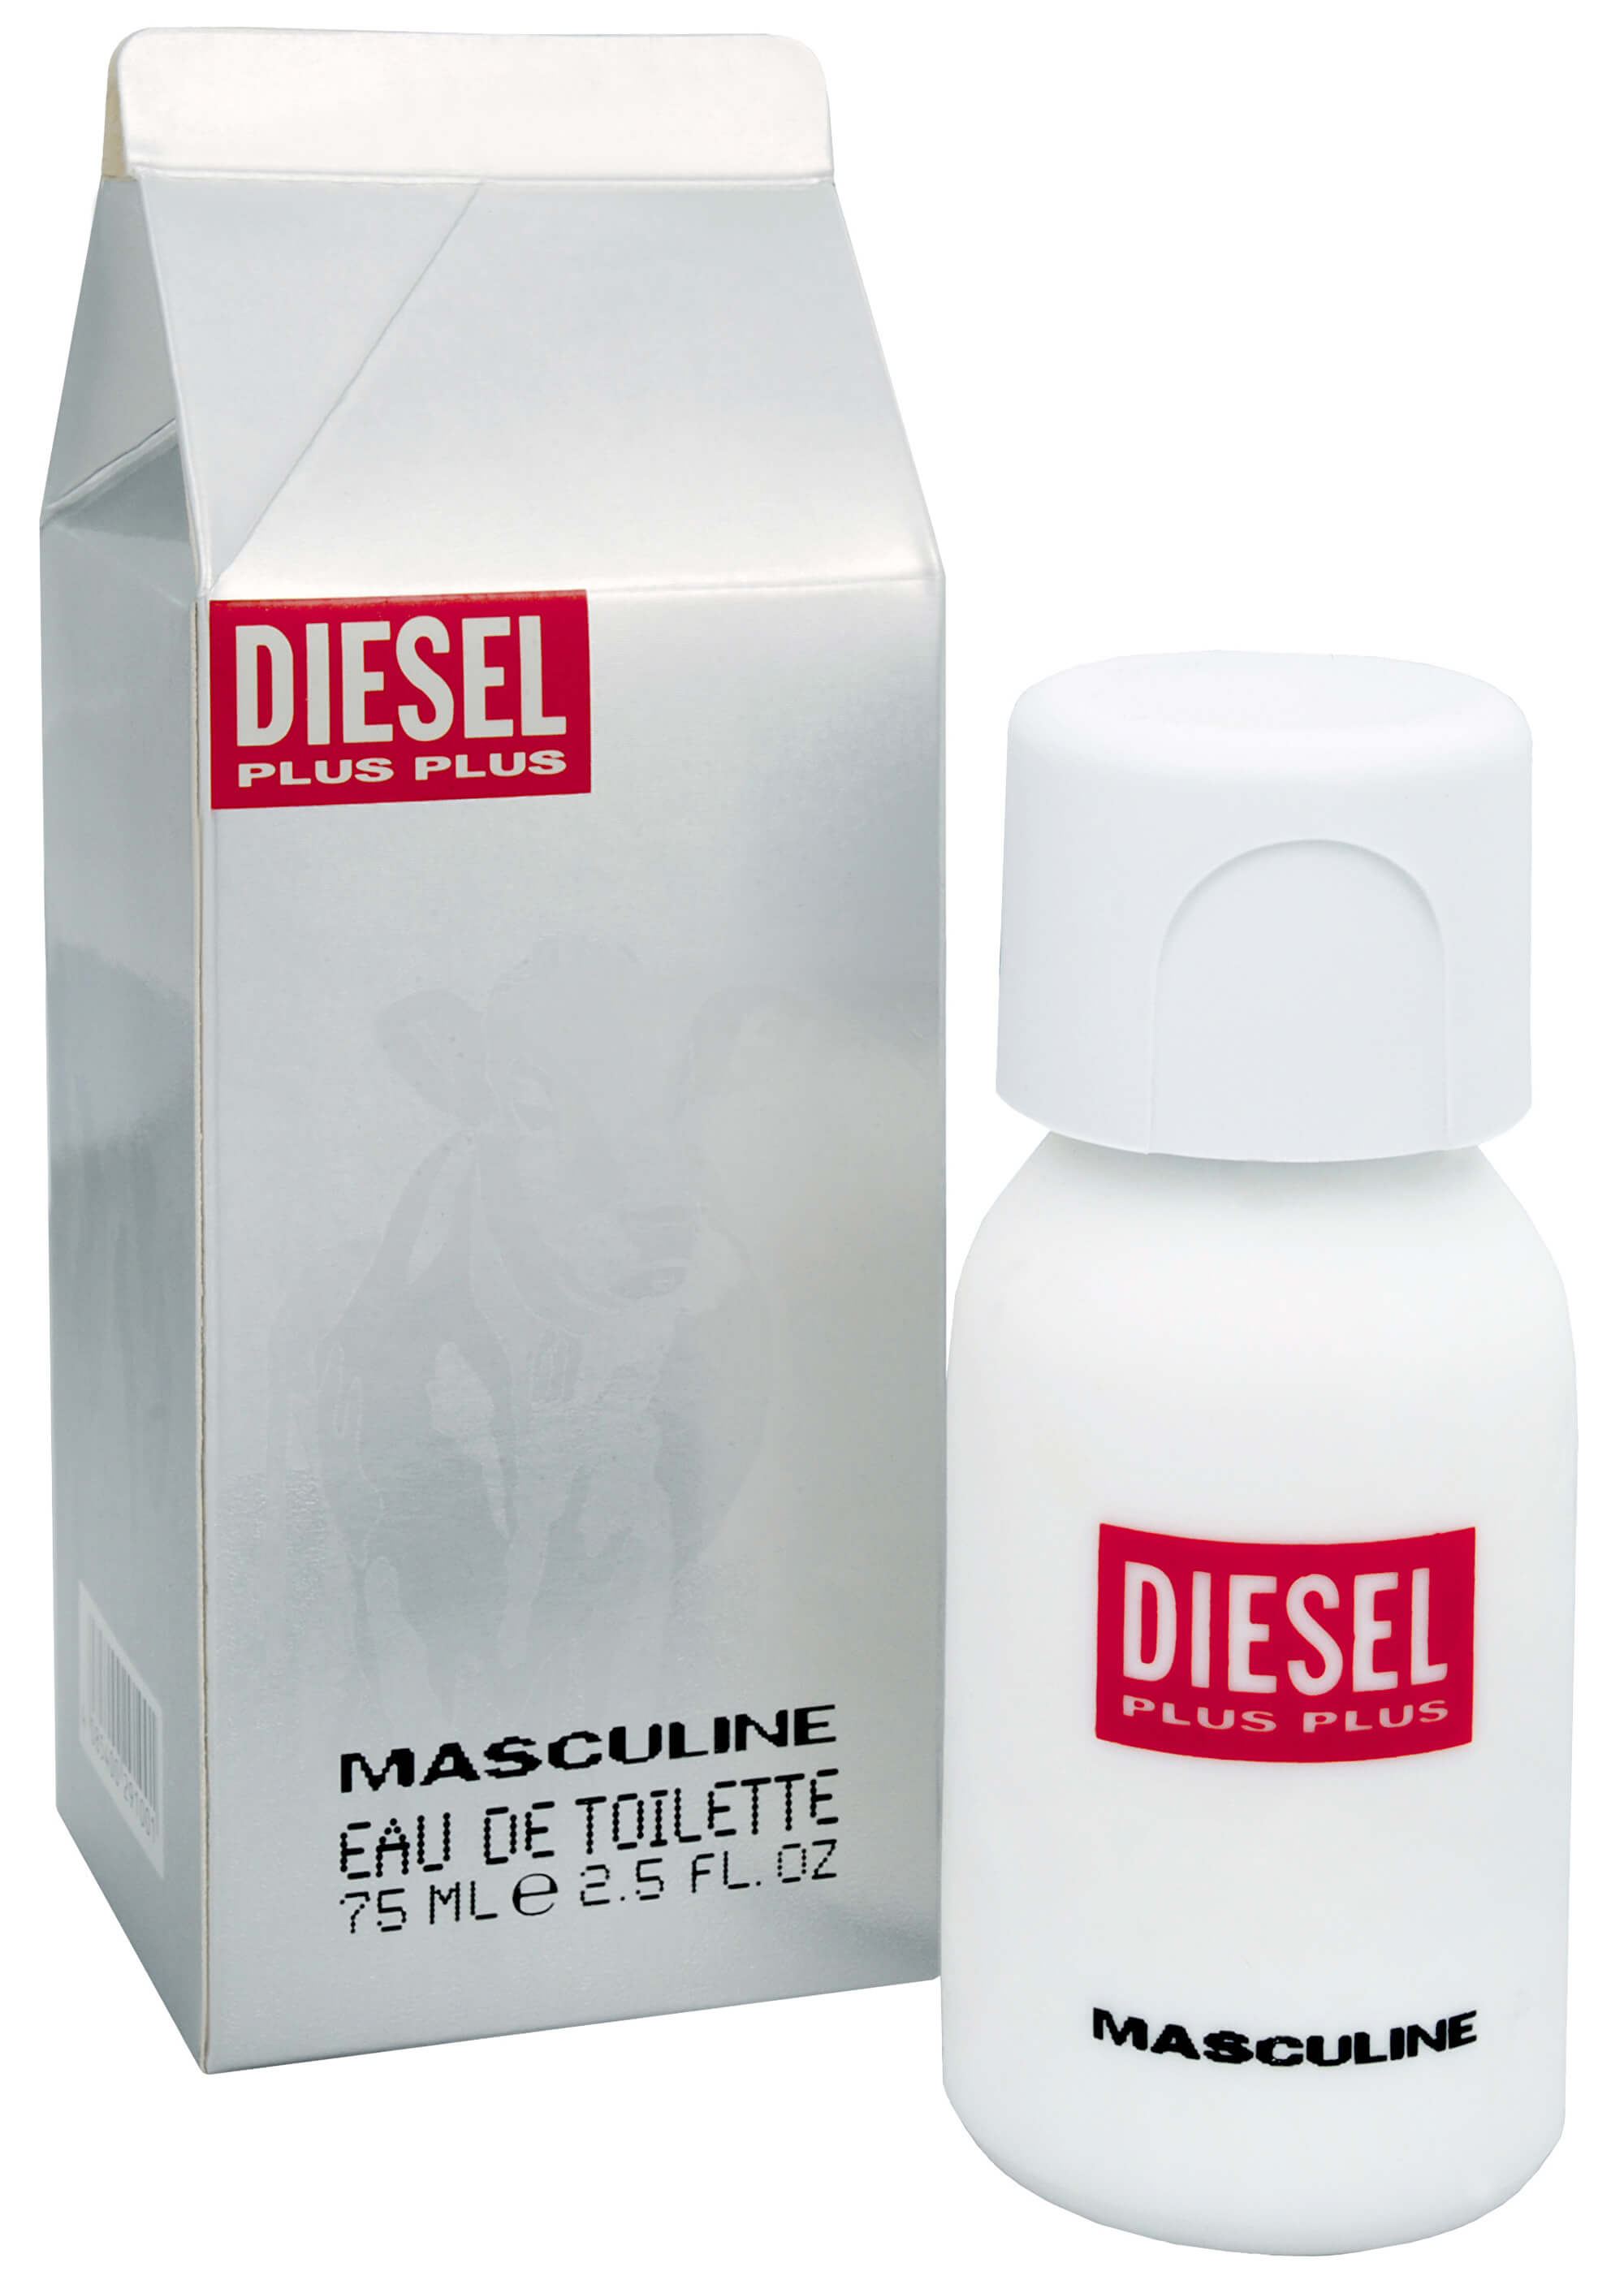 Diesel Plus Plus Masculine - EDT 1 ml - odstřik + 2 měsíce na vrácení zboží